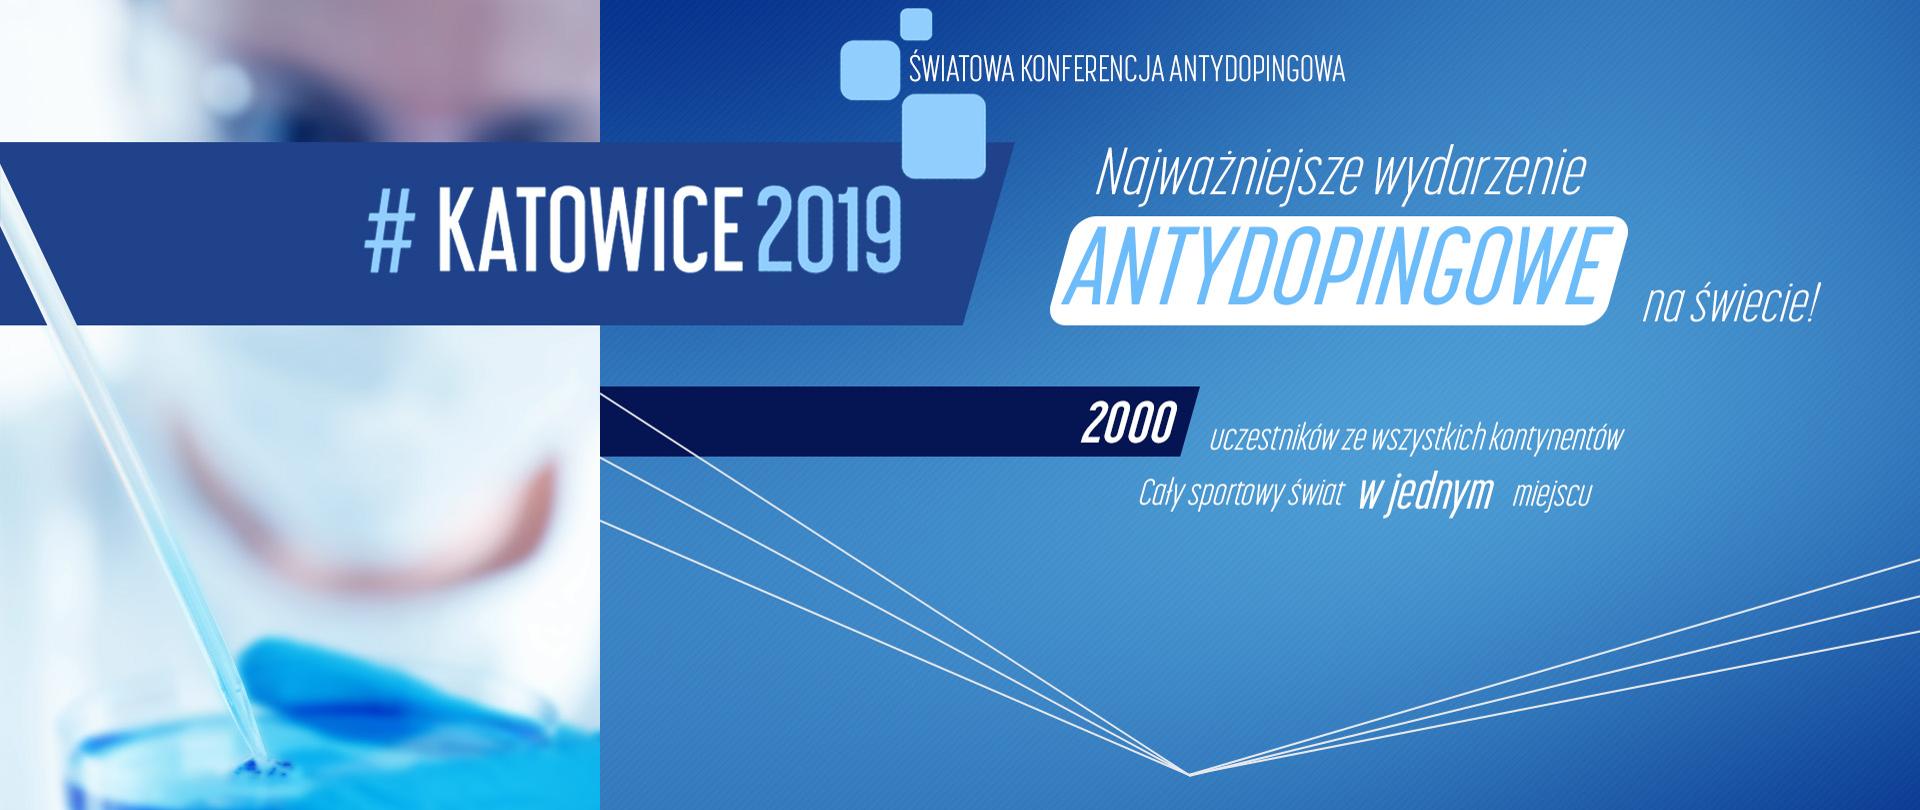 Katowice globalnym centrum walki z dopingiem!